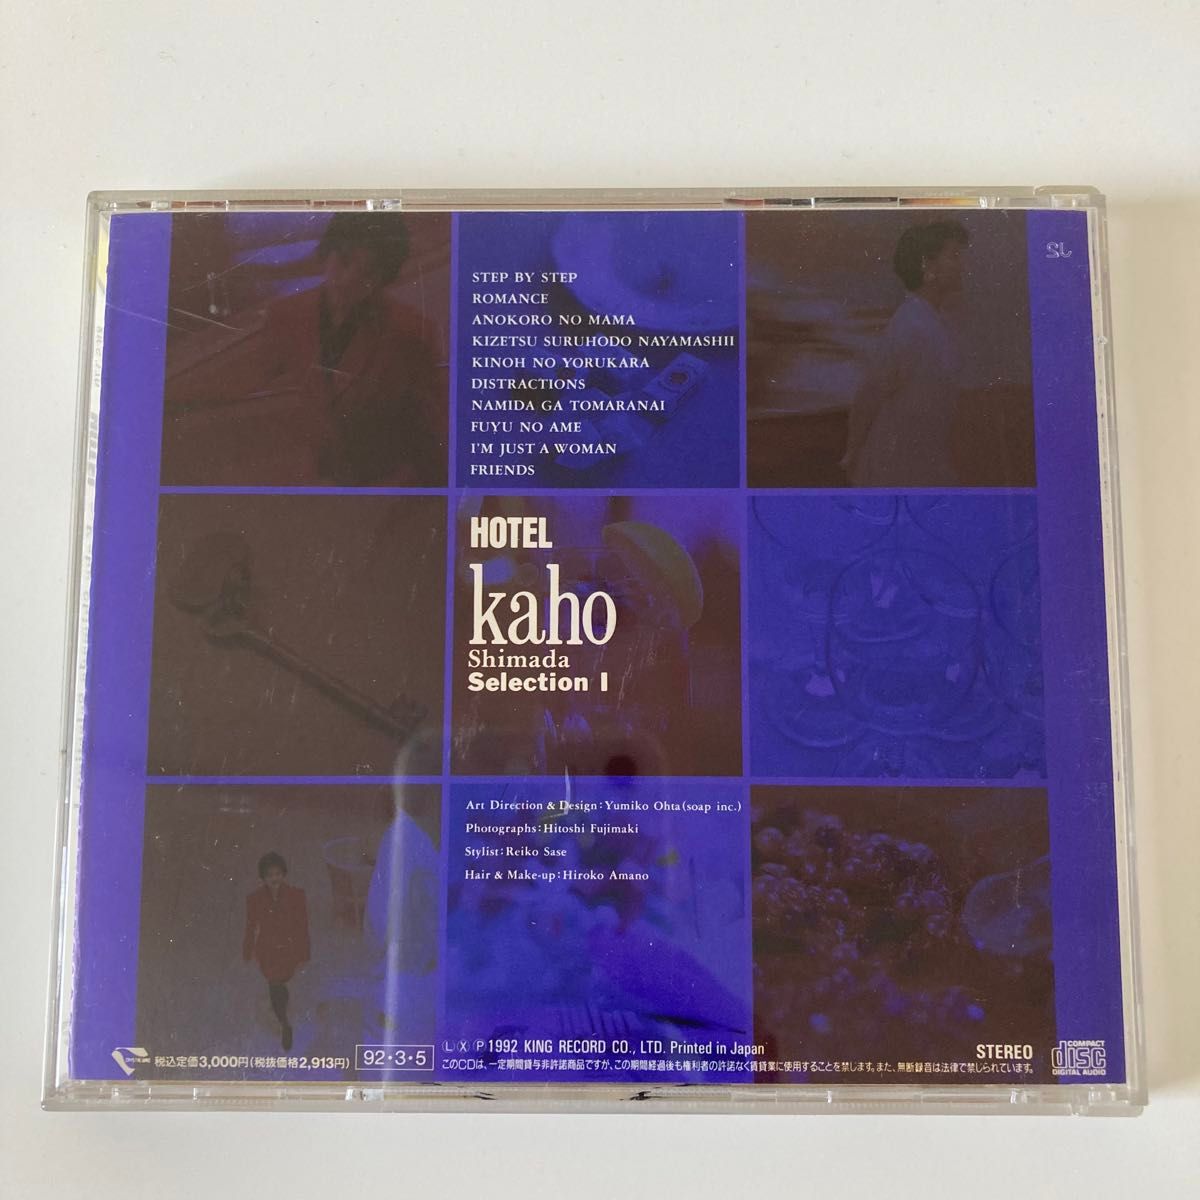 島田歌穂 ホテル セレクション1 HOTEL Kaho Shimada Selection 1 CD